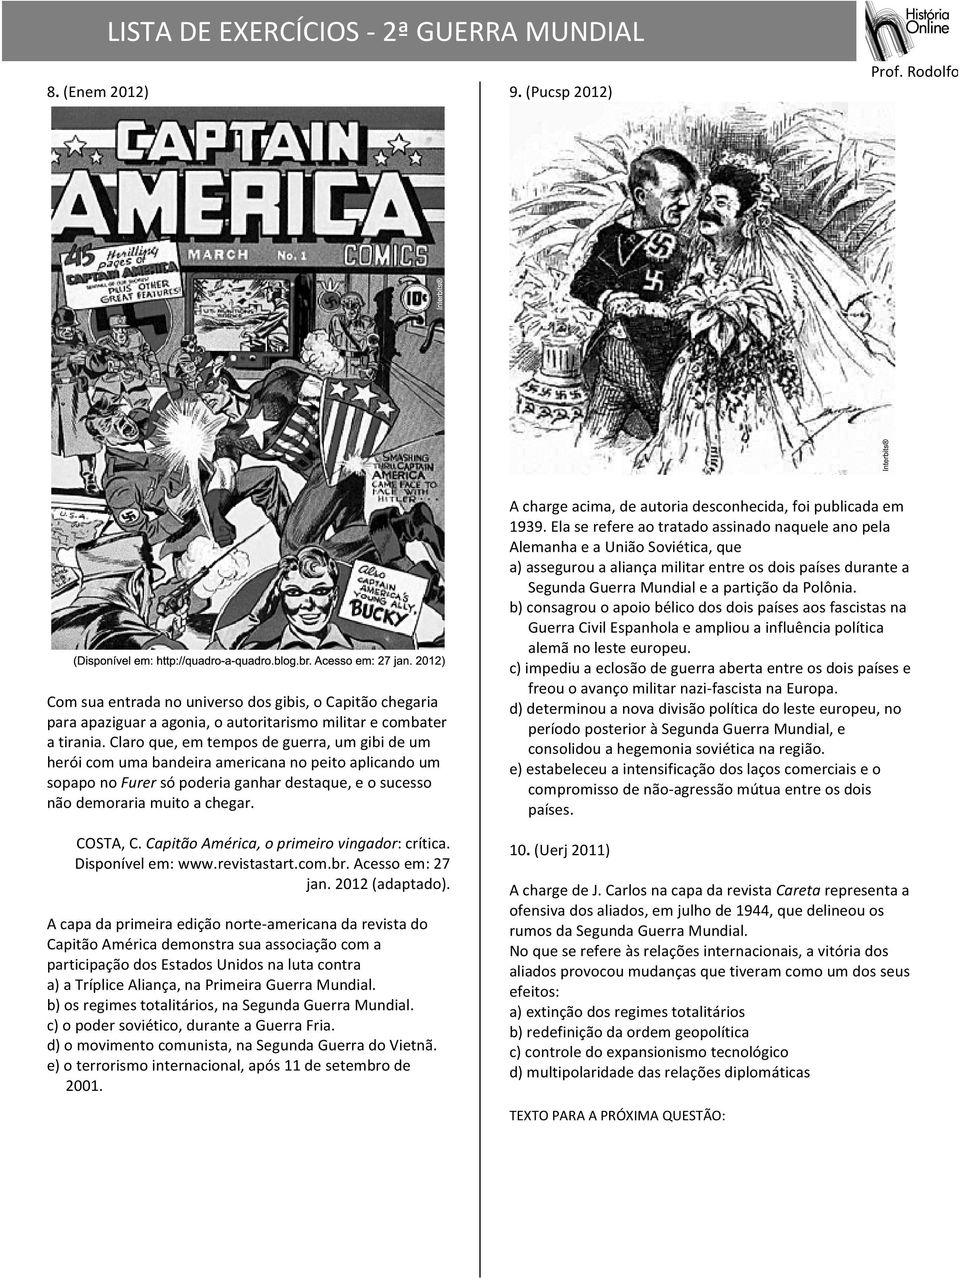 Capitão América, o primeiro vingador: crítica. Disponível em: www.revistastart.com.br. Acesso em: 27 jan. 2012 (adaptado).